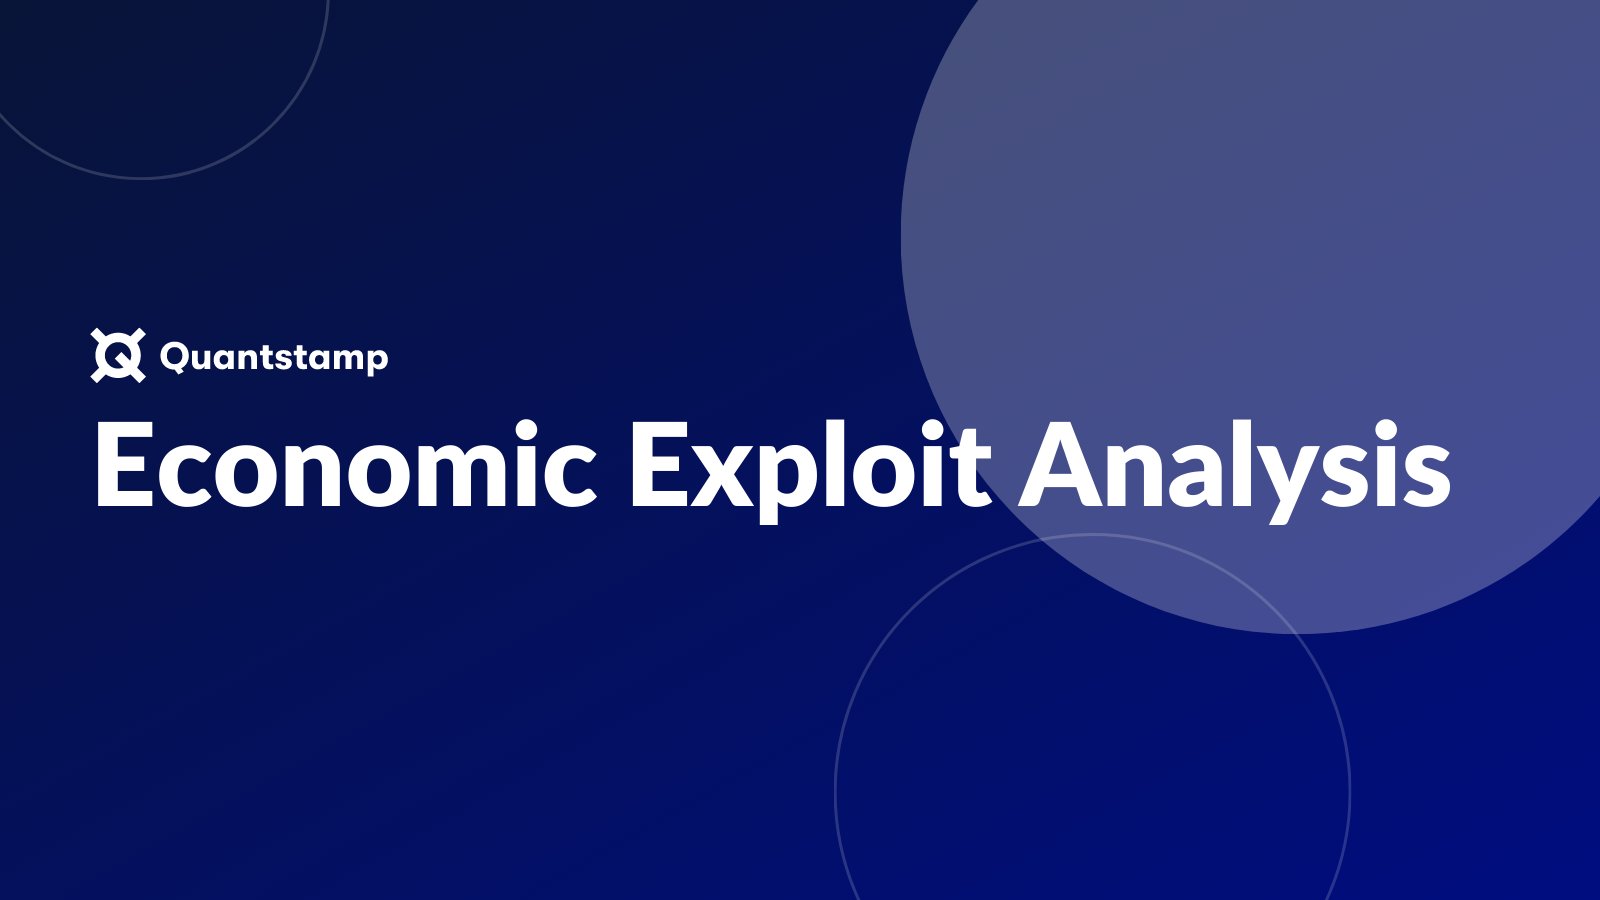 Quantstamp vừa ra mắt một công cụ "Economic Exploit Analysis" để phát hiện các lỗ hổng về flash loan trong các giao thức DeFi.